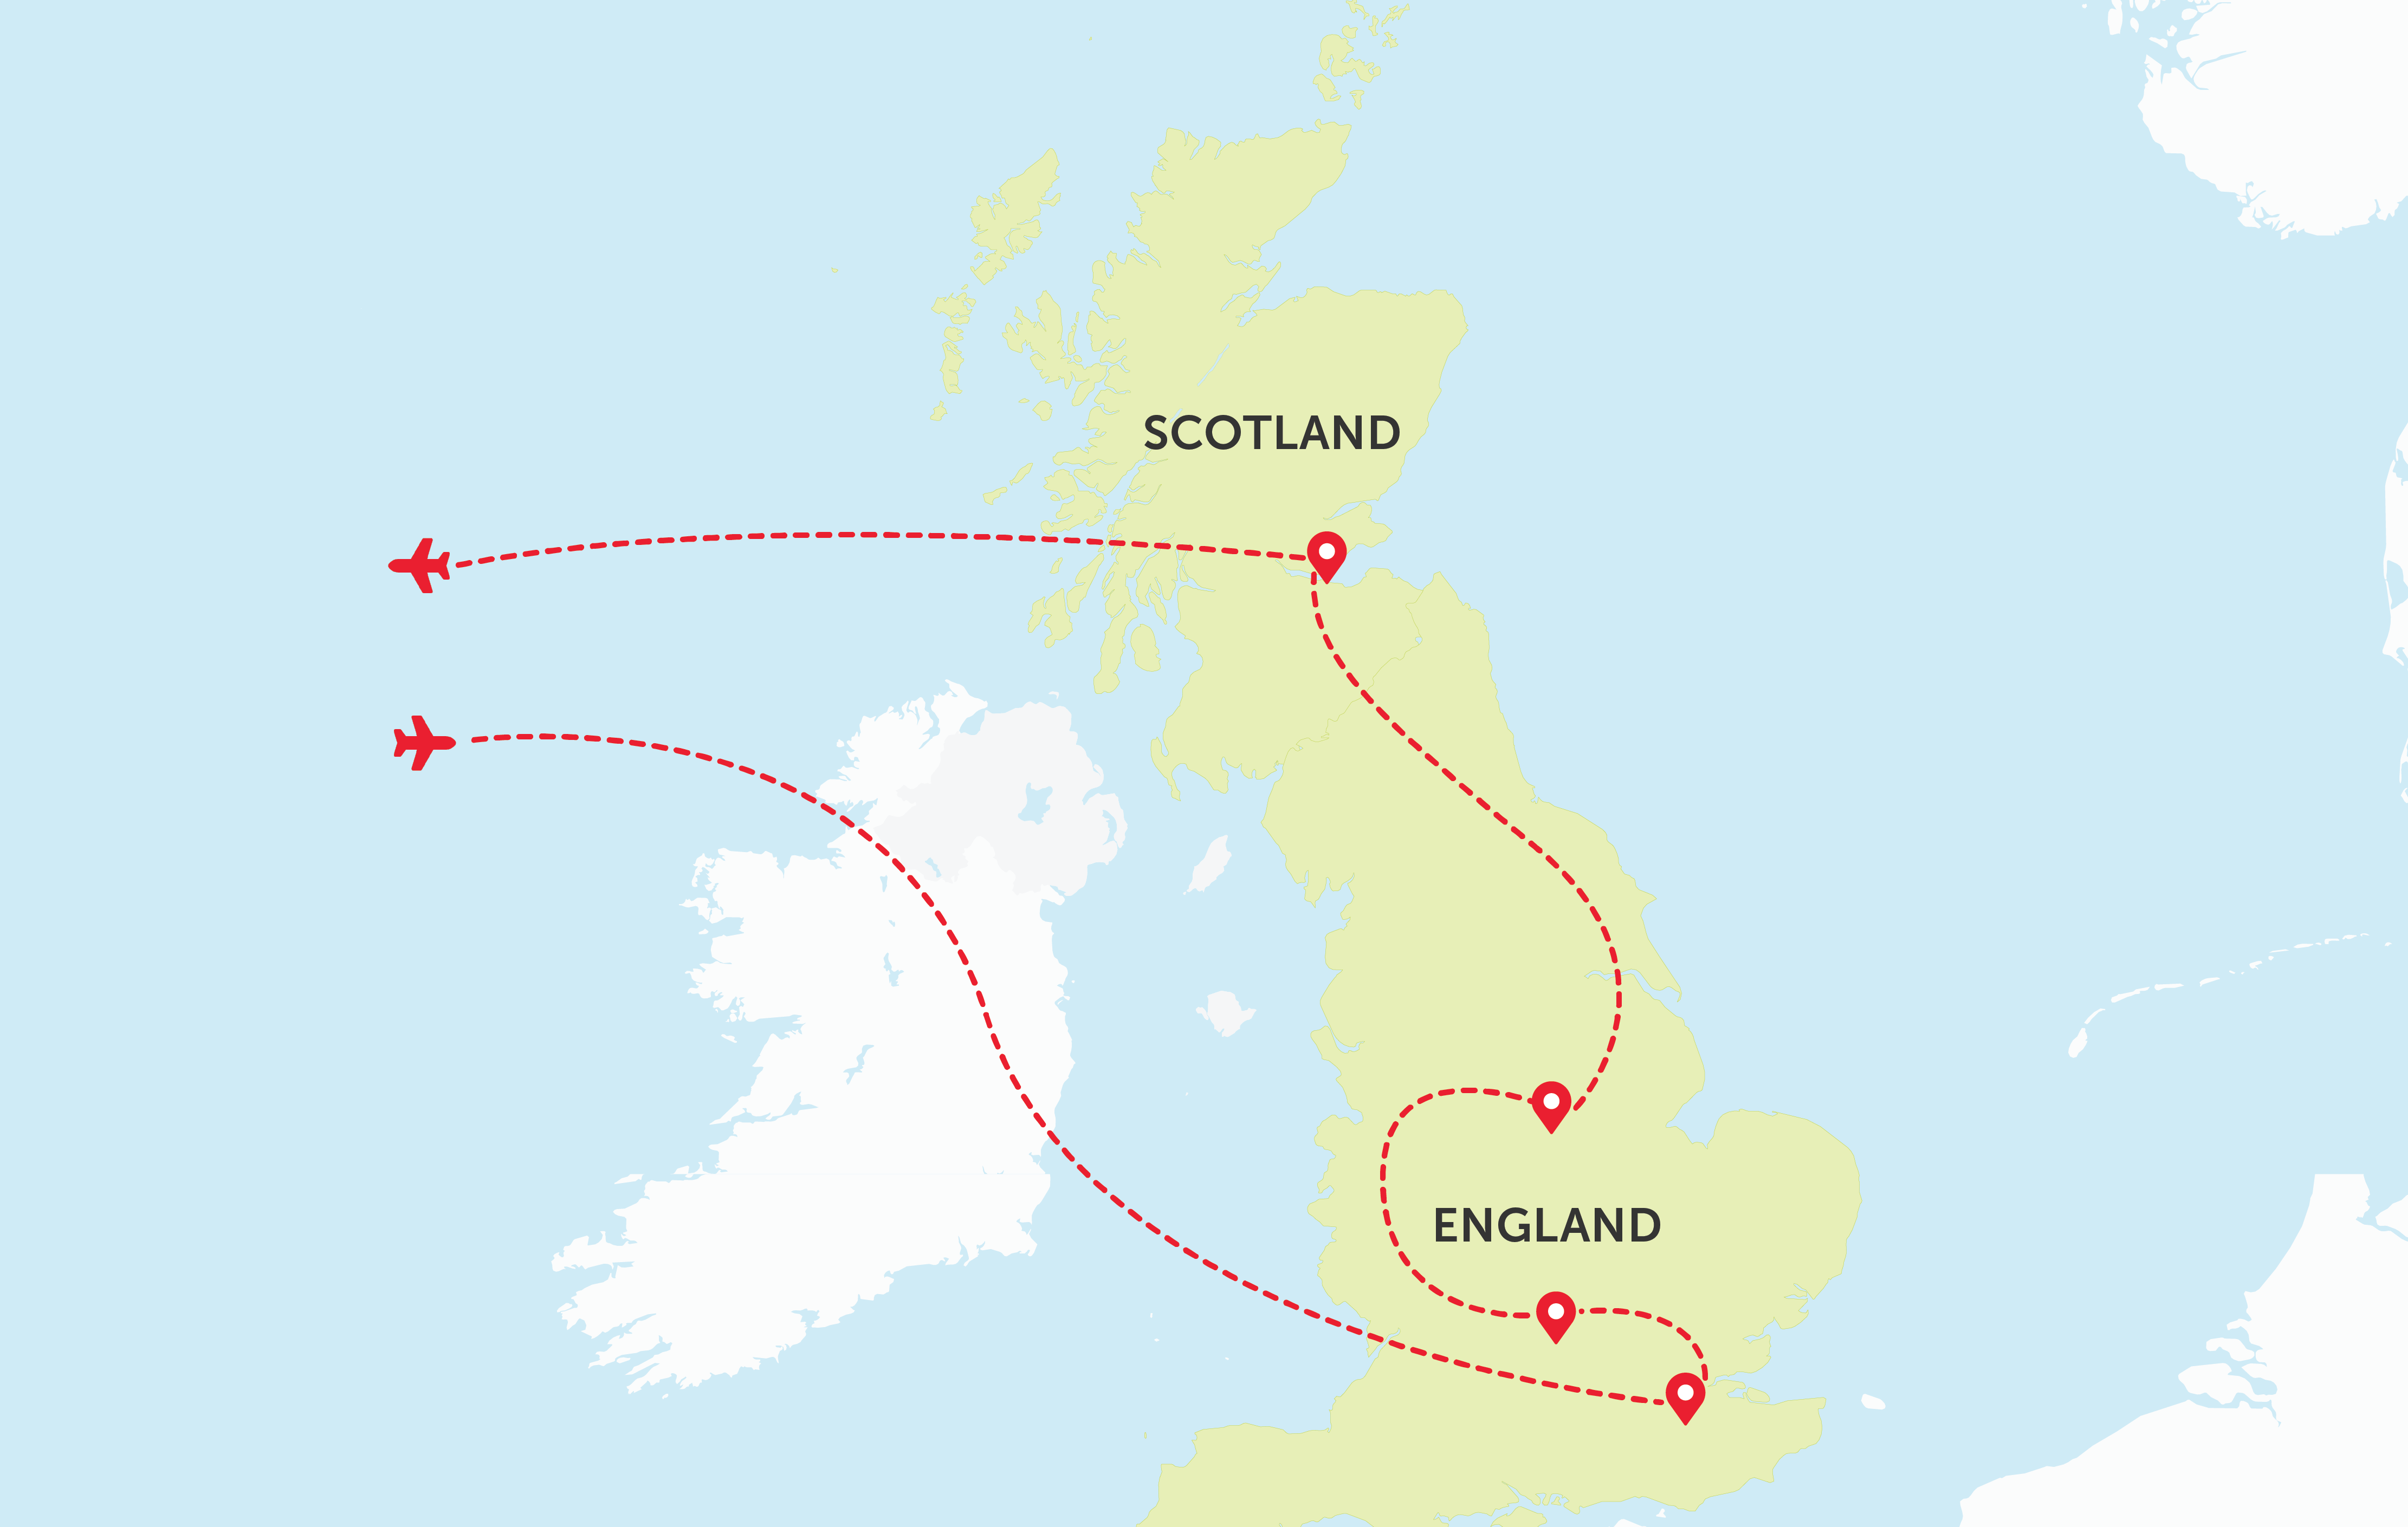 Scotland and England